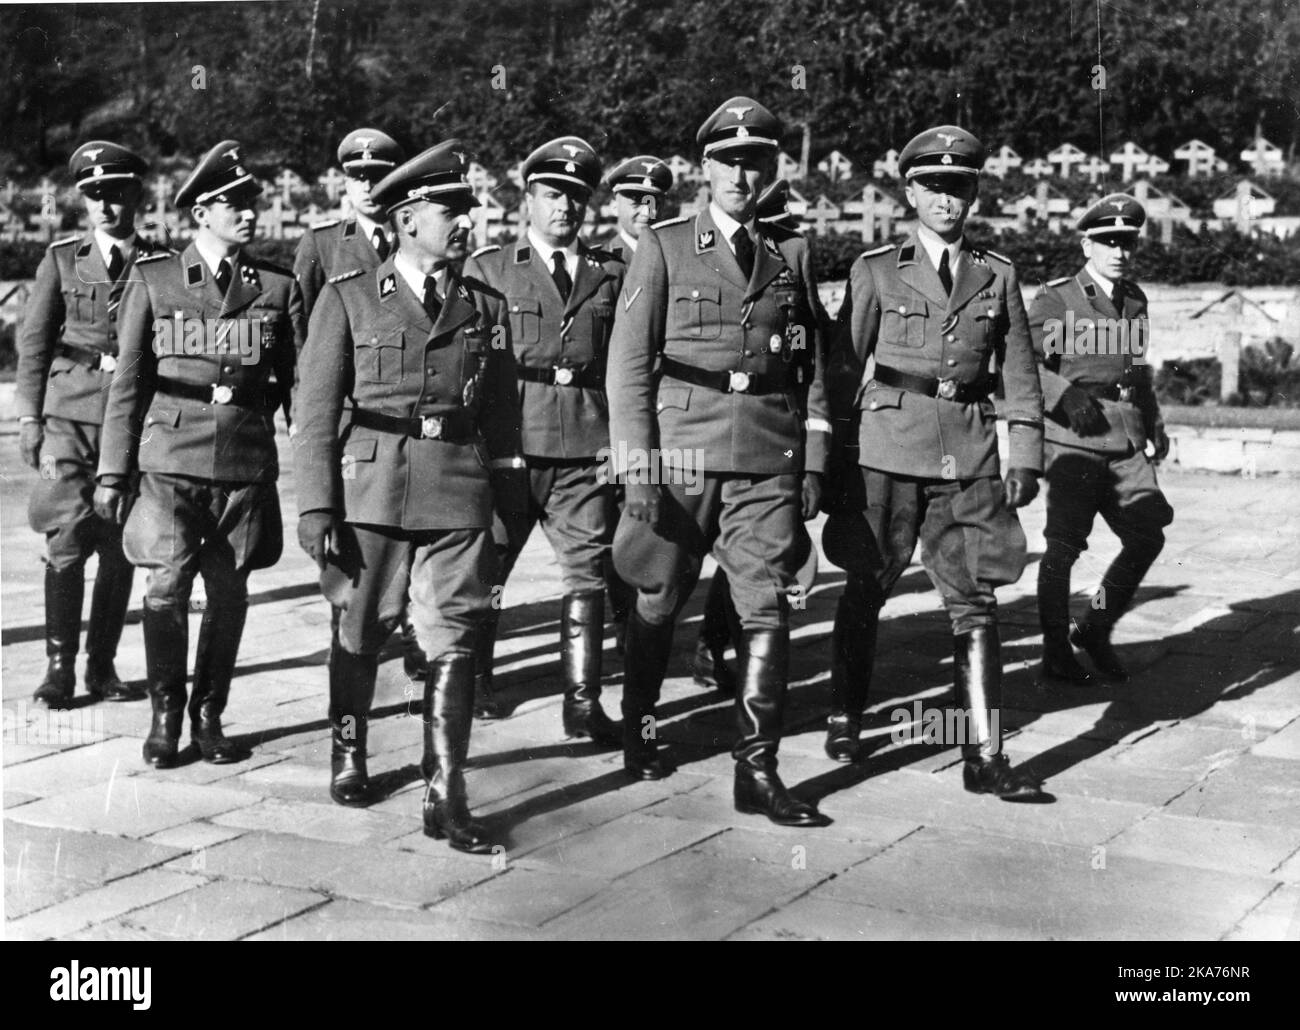 SS Gruppenfuhrer Reinhard Heydrich (dans la première rangée), en visite en Norvège l'occupation allemande de la Norvège pendant la Seconde Guerre mondiale Heinrich Fehlis, chef de la police et des services de sécurité allemands (Gestapo) à Oslo pendant la guerre (pair). Rolf Schiedermair (à gauche, légèrement derrière Heydrich) Banque D'Images